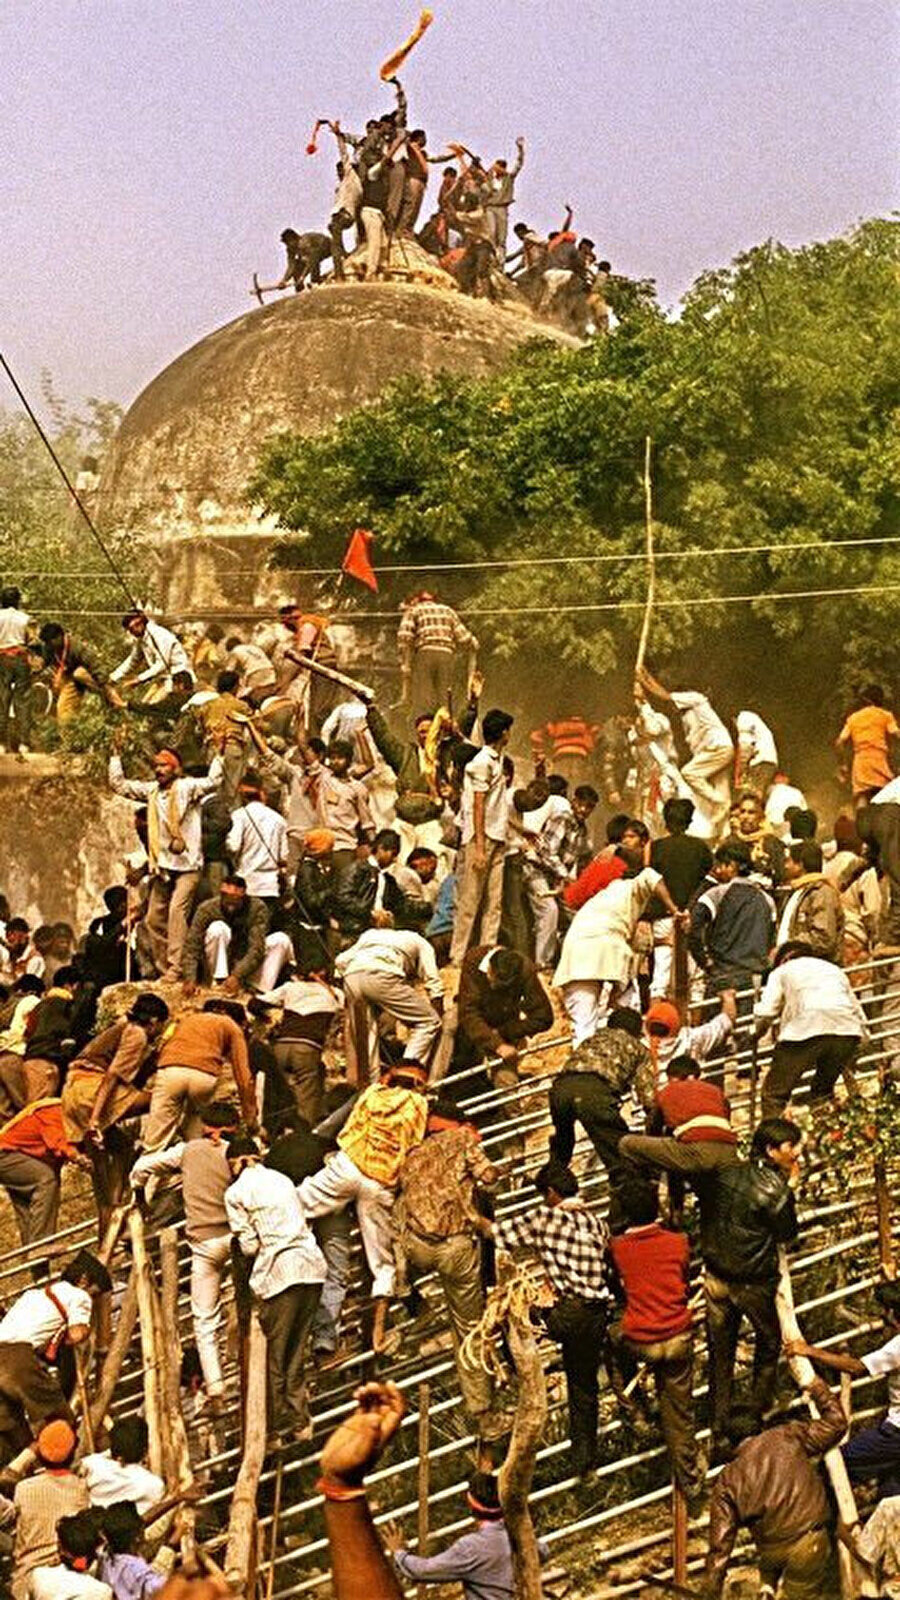 150 bin kişinin kazma, kürek ve levyelerle ibadethaneye saldırması, yaklaşık 500 yıldır ayakta duran Babri Camii'nin 5 saat içinde yıkılmasıyla sonuçlandı.